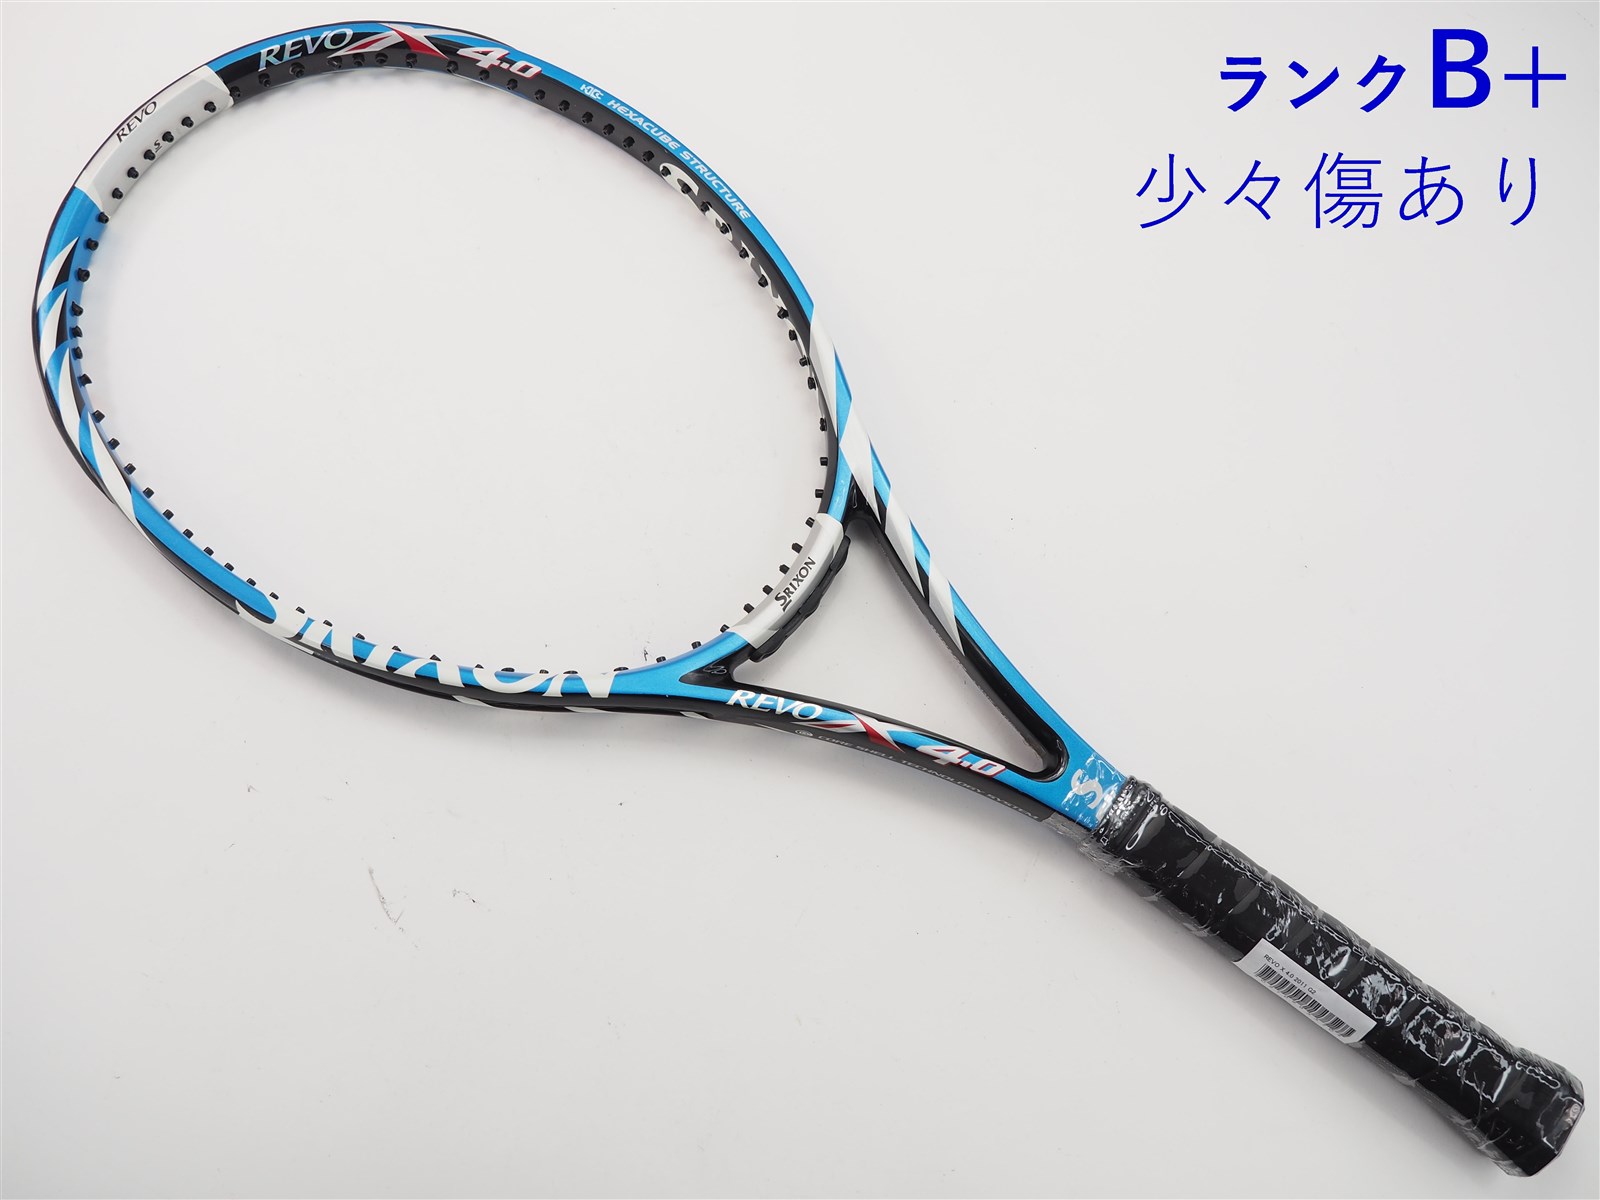 テニスラケット スリクソン レヴォ エックス 4.0 2011年モデル (G2